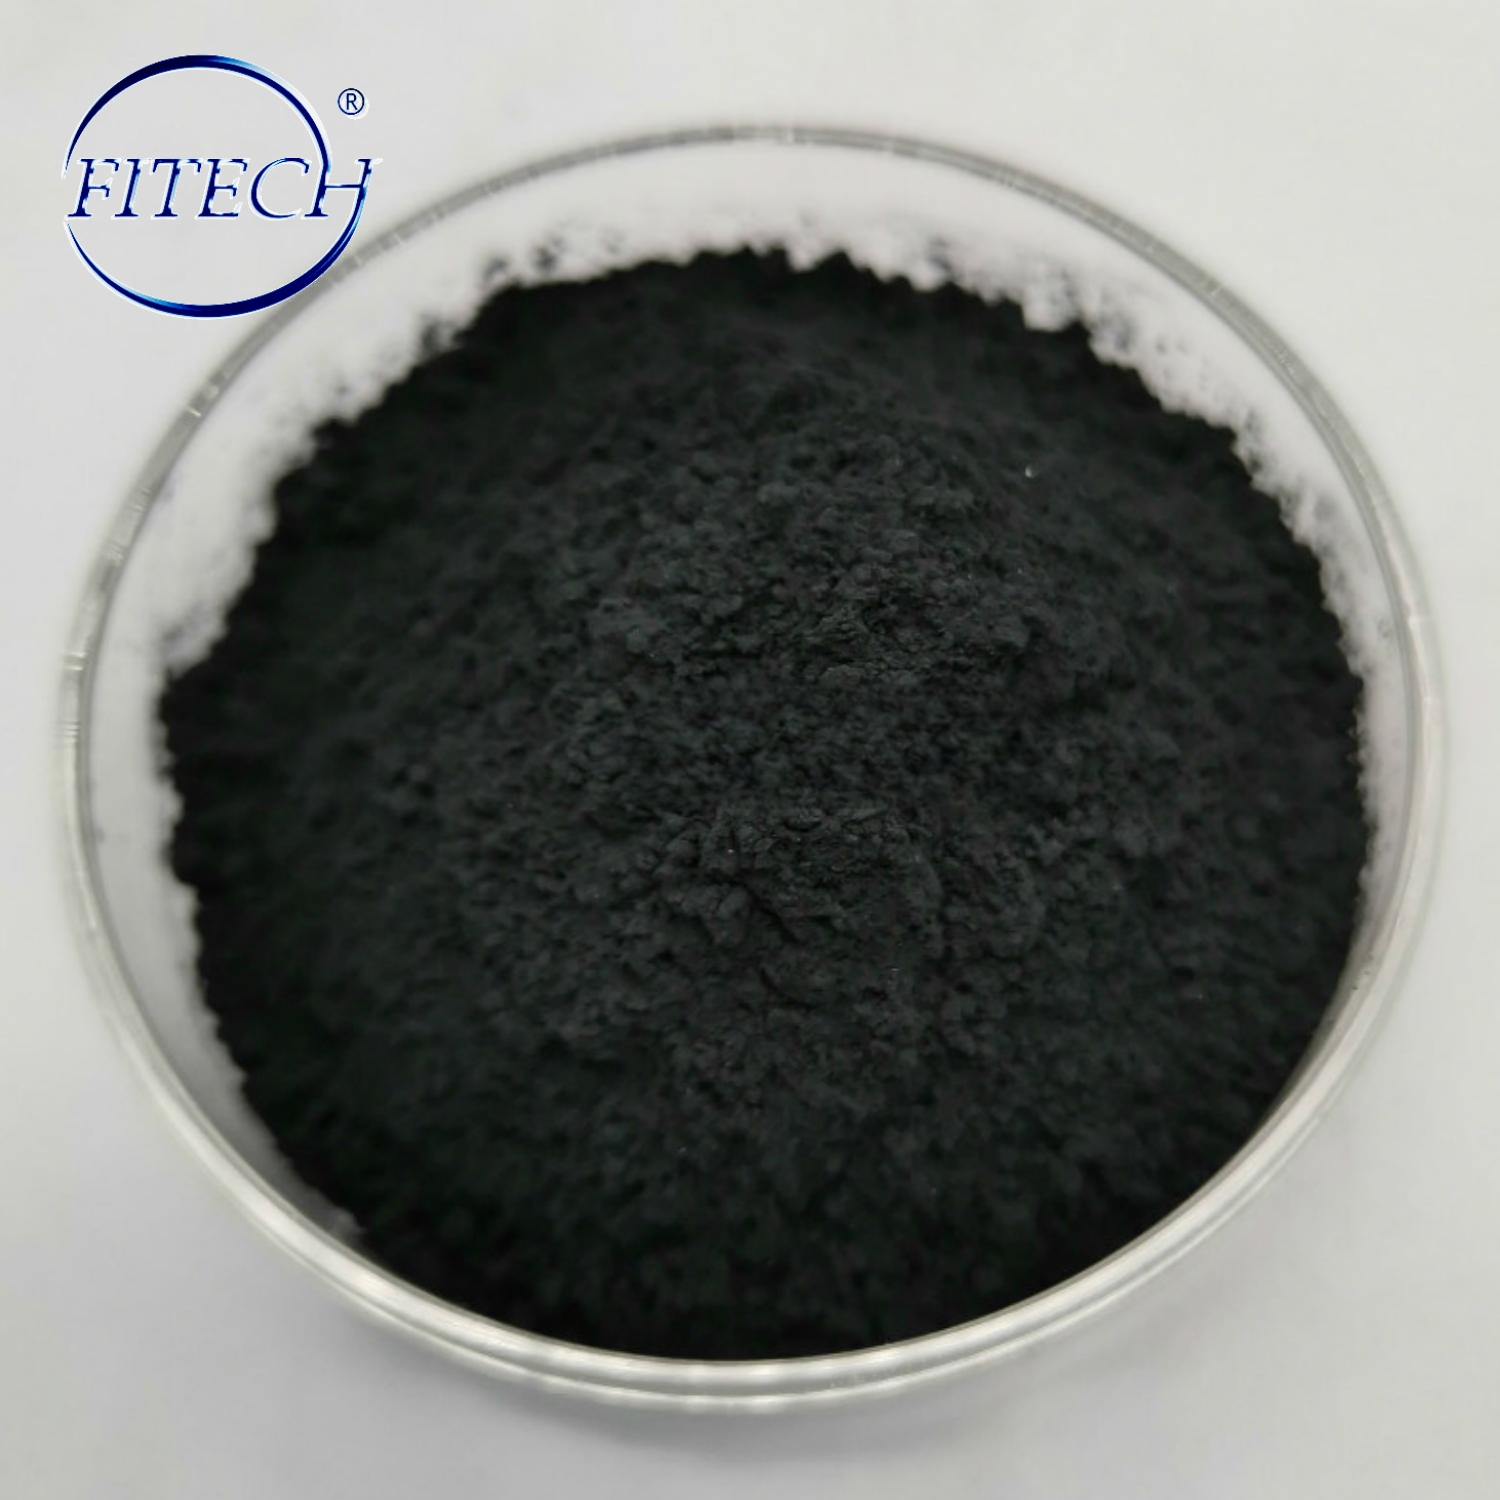 High Purity Rare Earth Powder 99.9%～99.99% Praseodymium Oxide CAS 12036-32-7